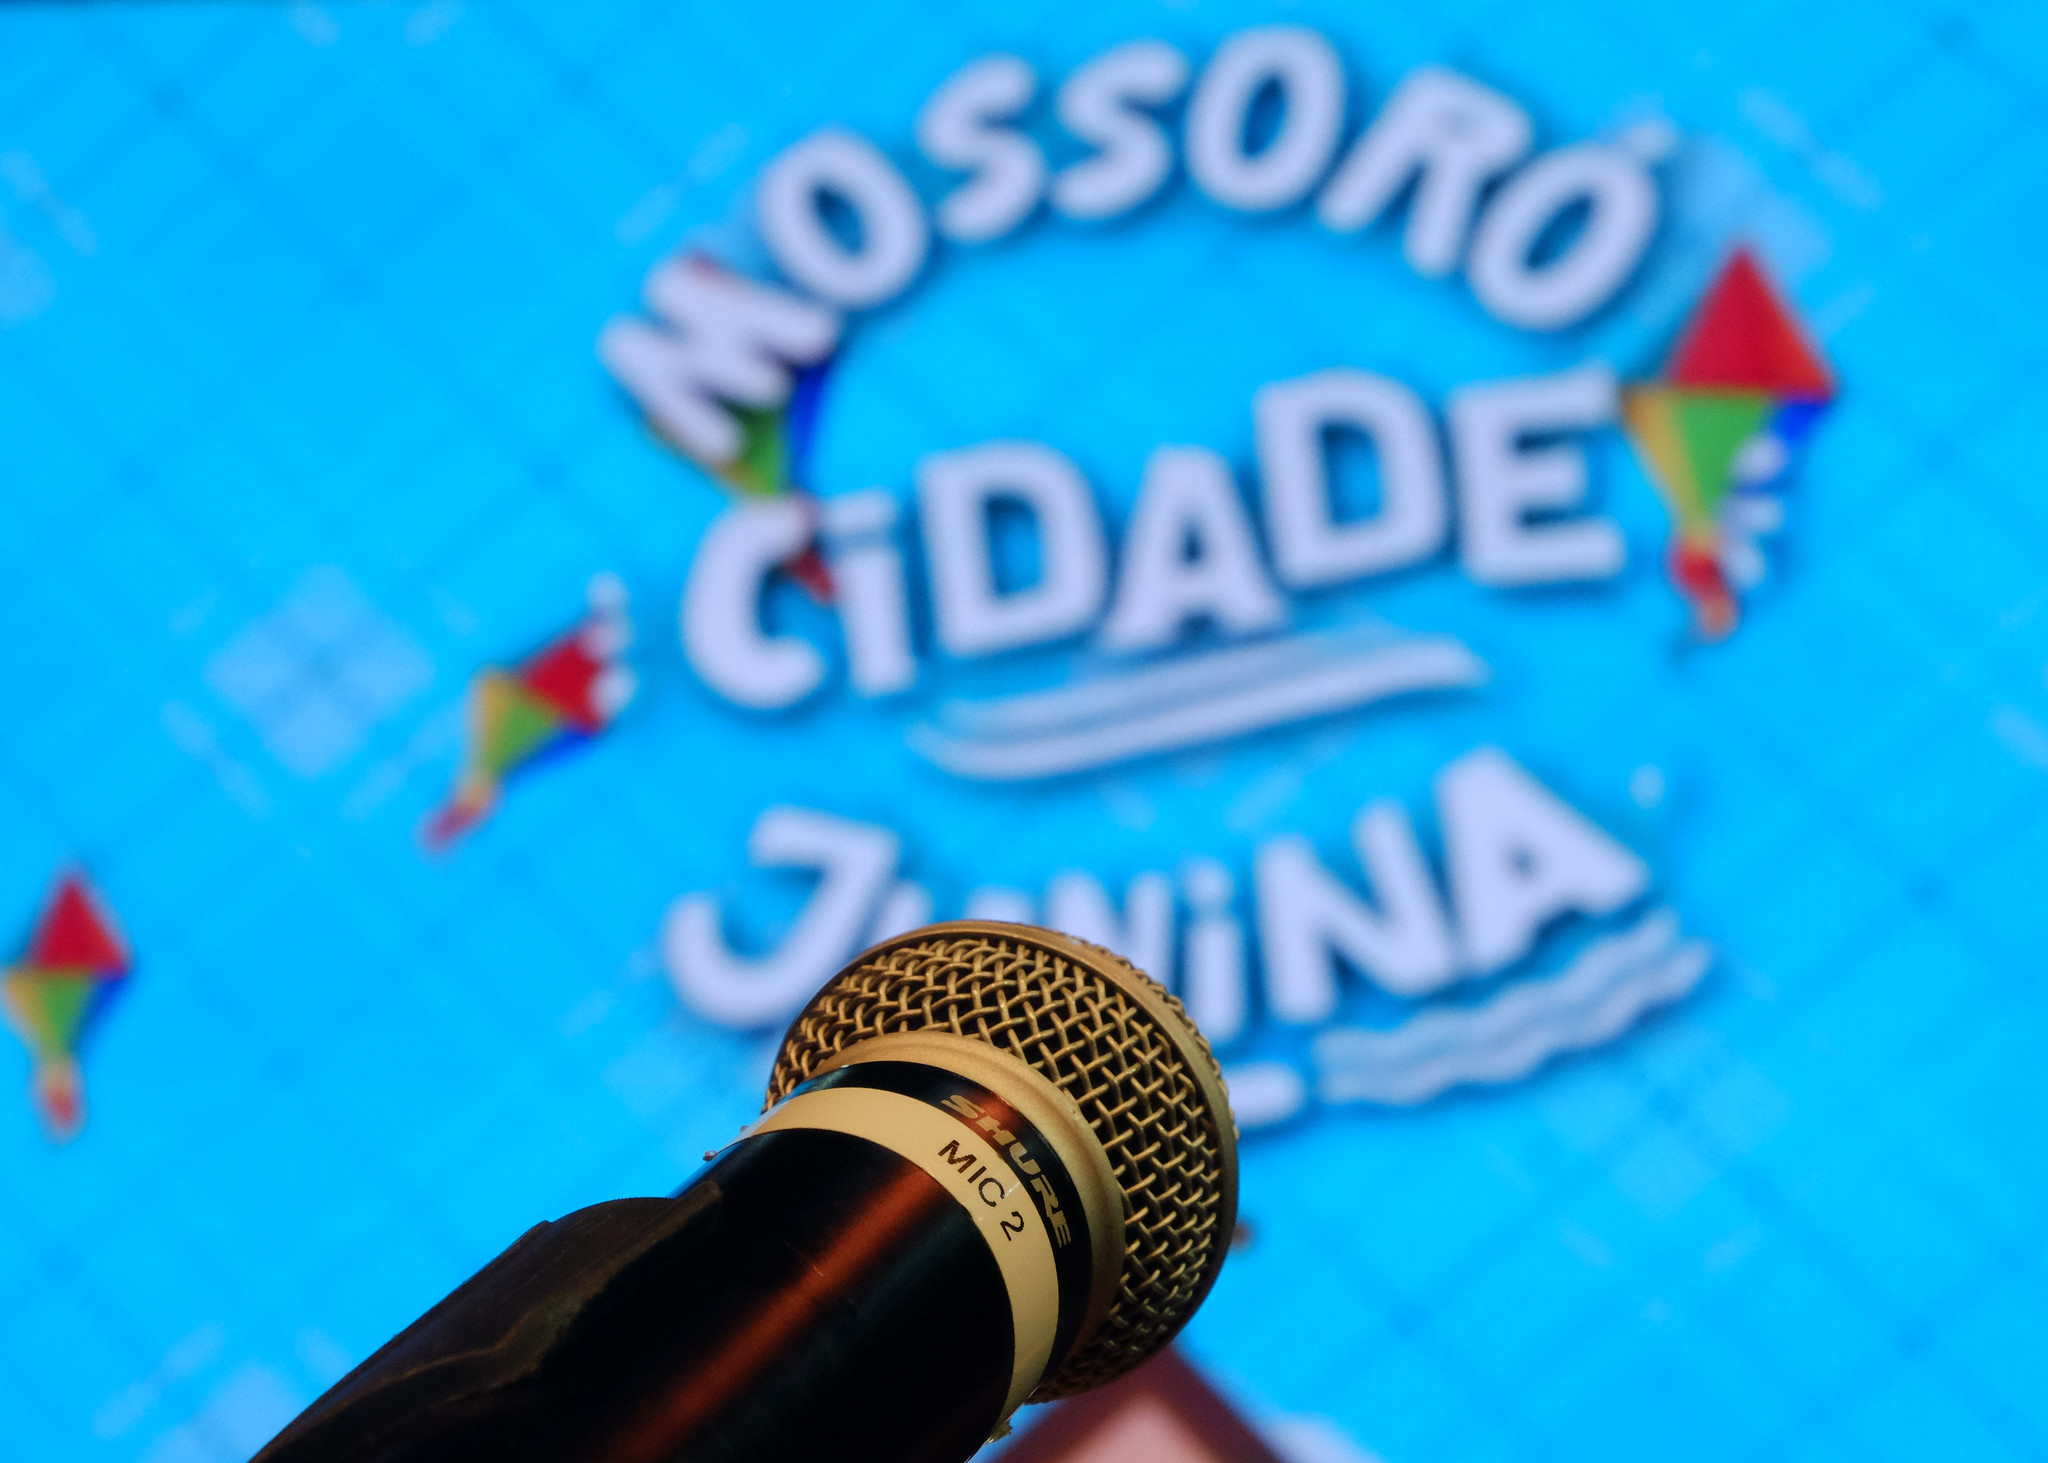 Credenciamento da imprensa: Lançamento do Mossoró Cidade Junina 2022